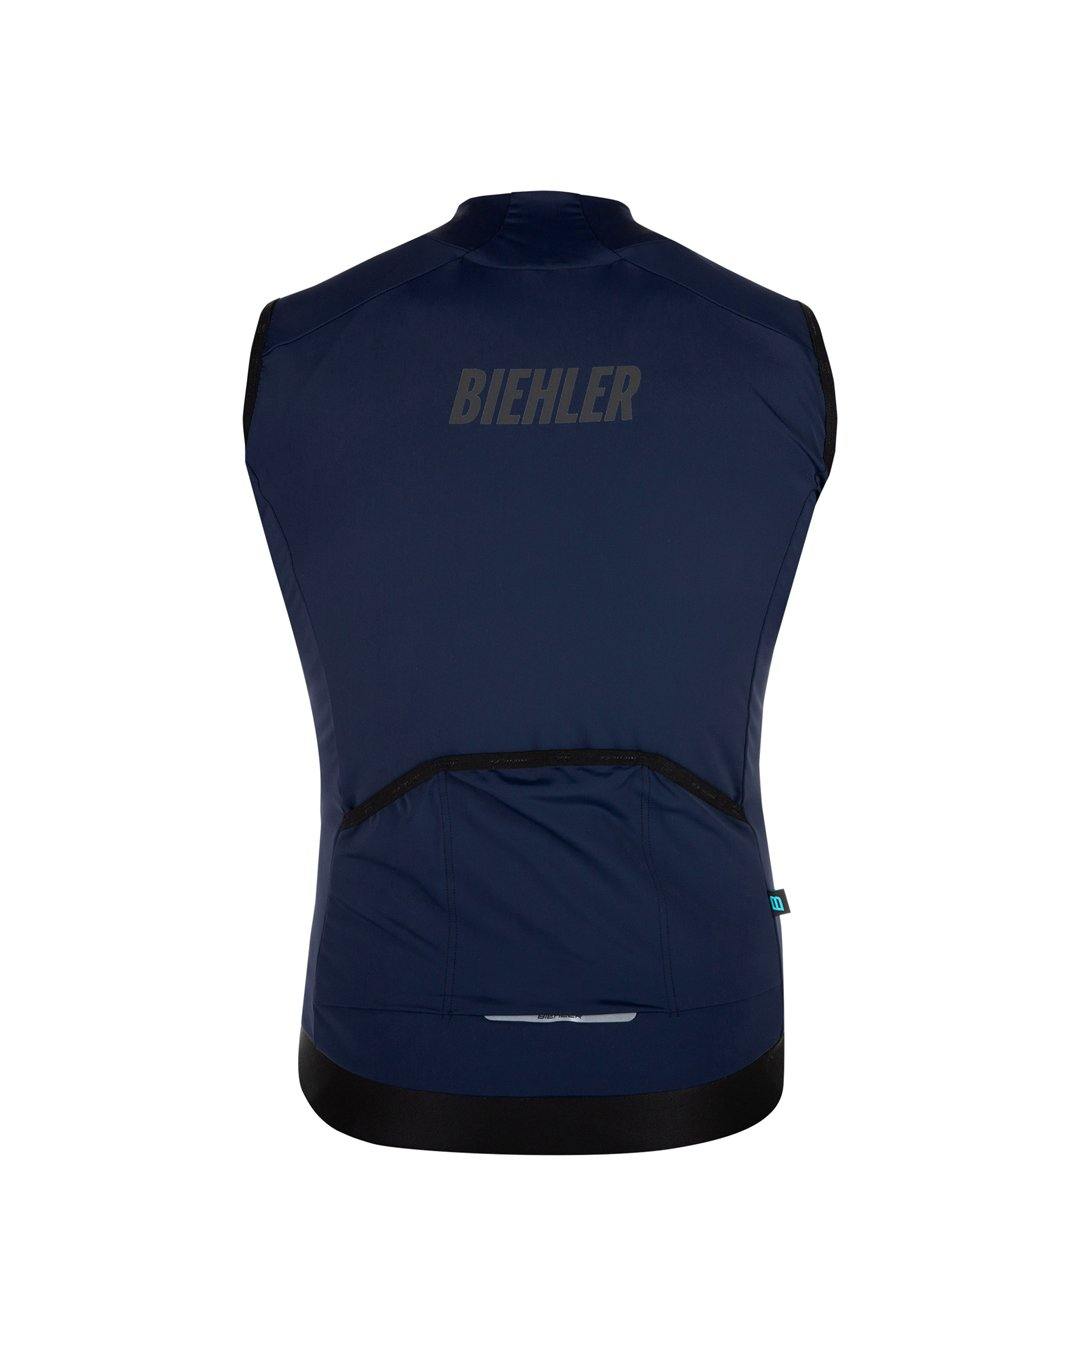 Signature3 Gilet - Biehler - Night Blue | Biehler | gioventu.cc